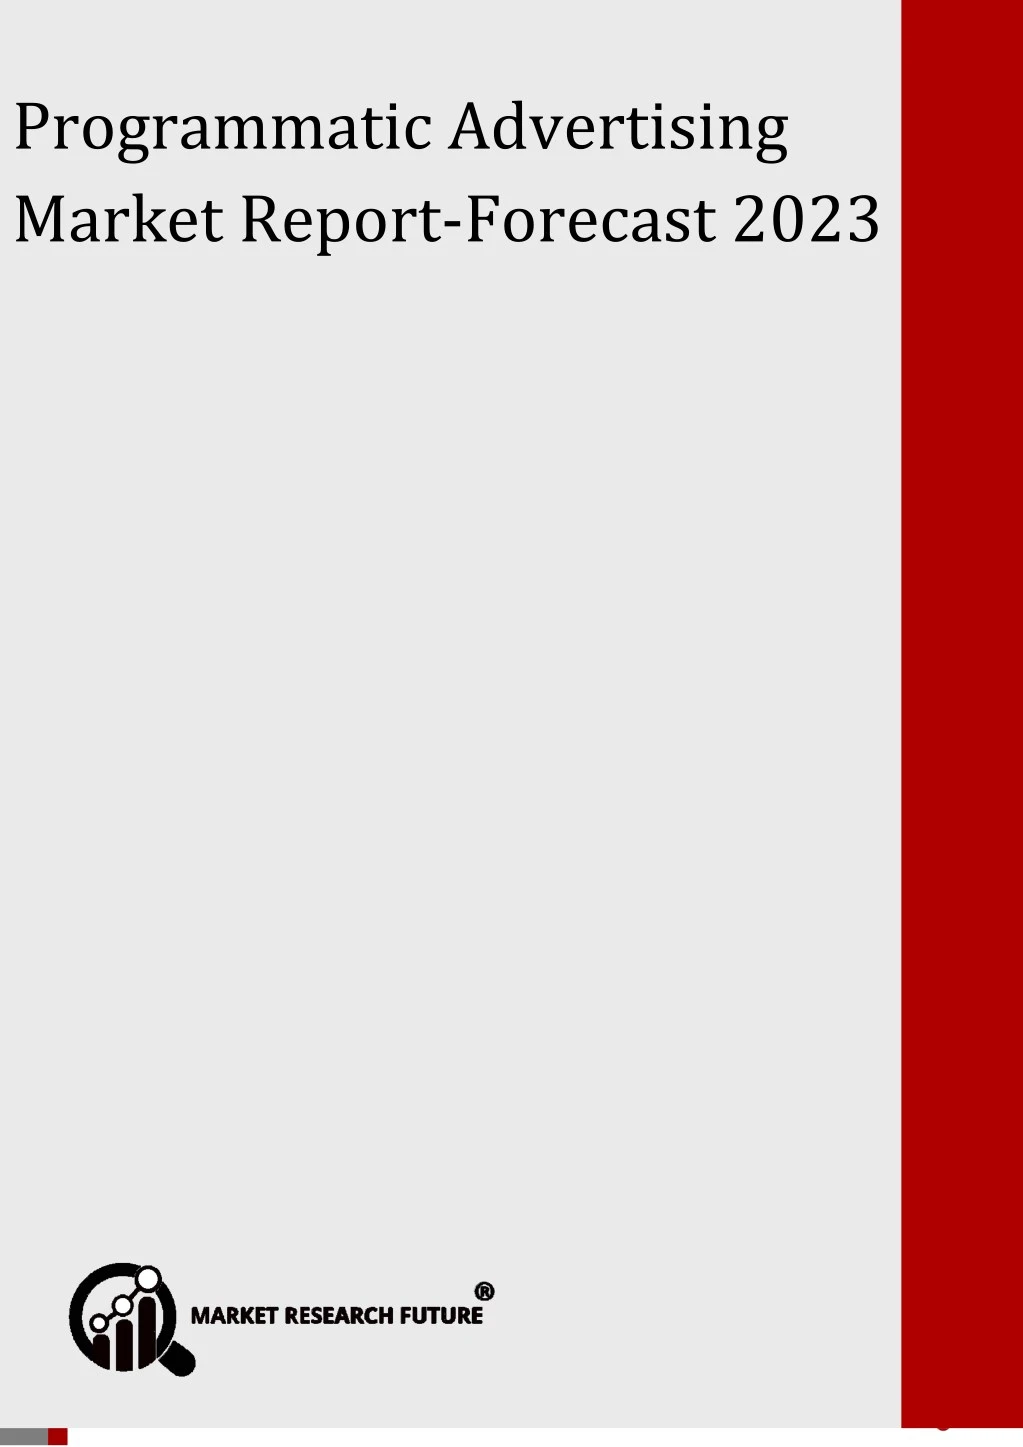 programmatic advertising market forecast 2023